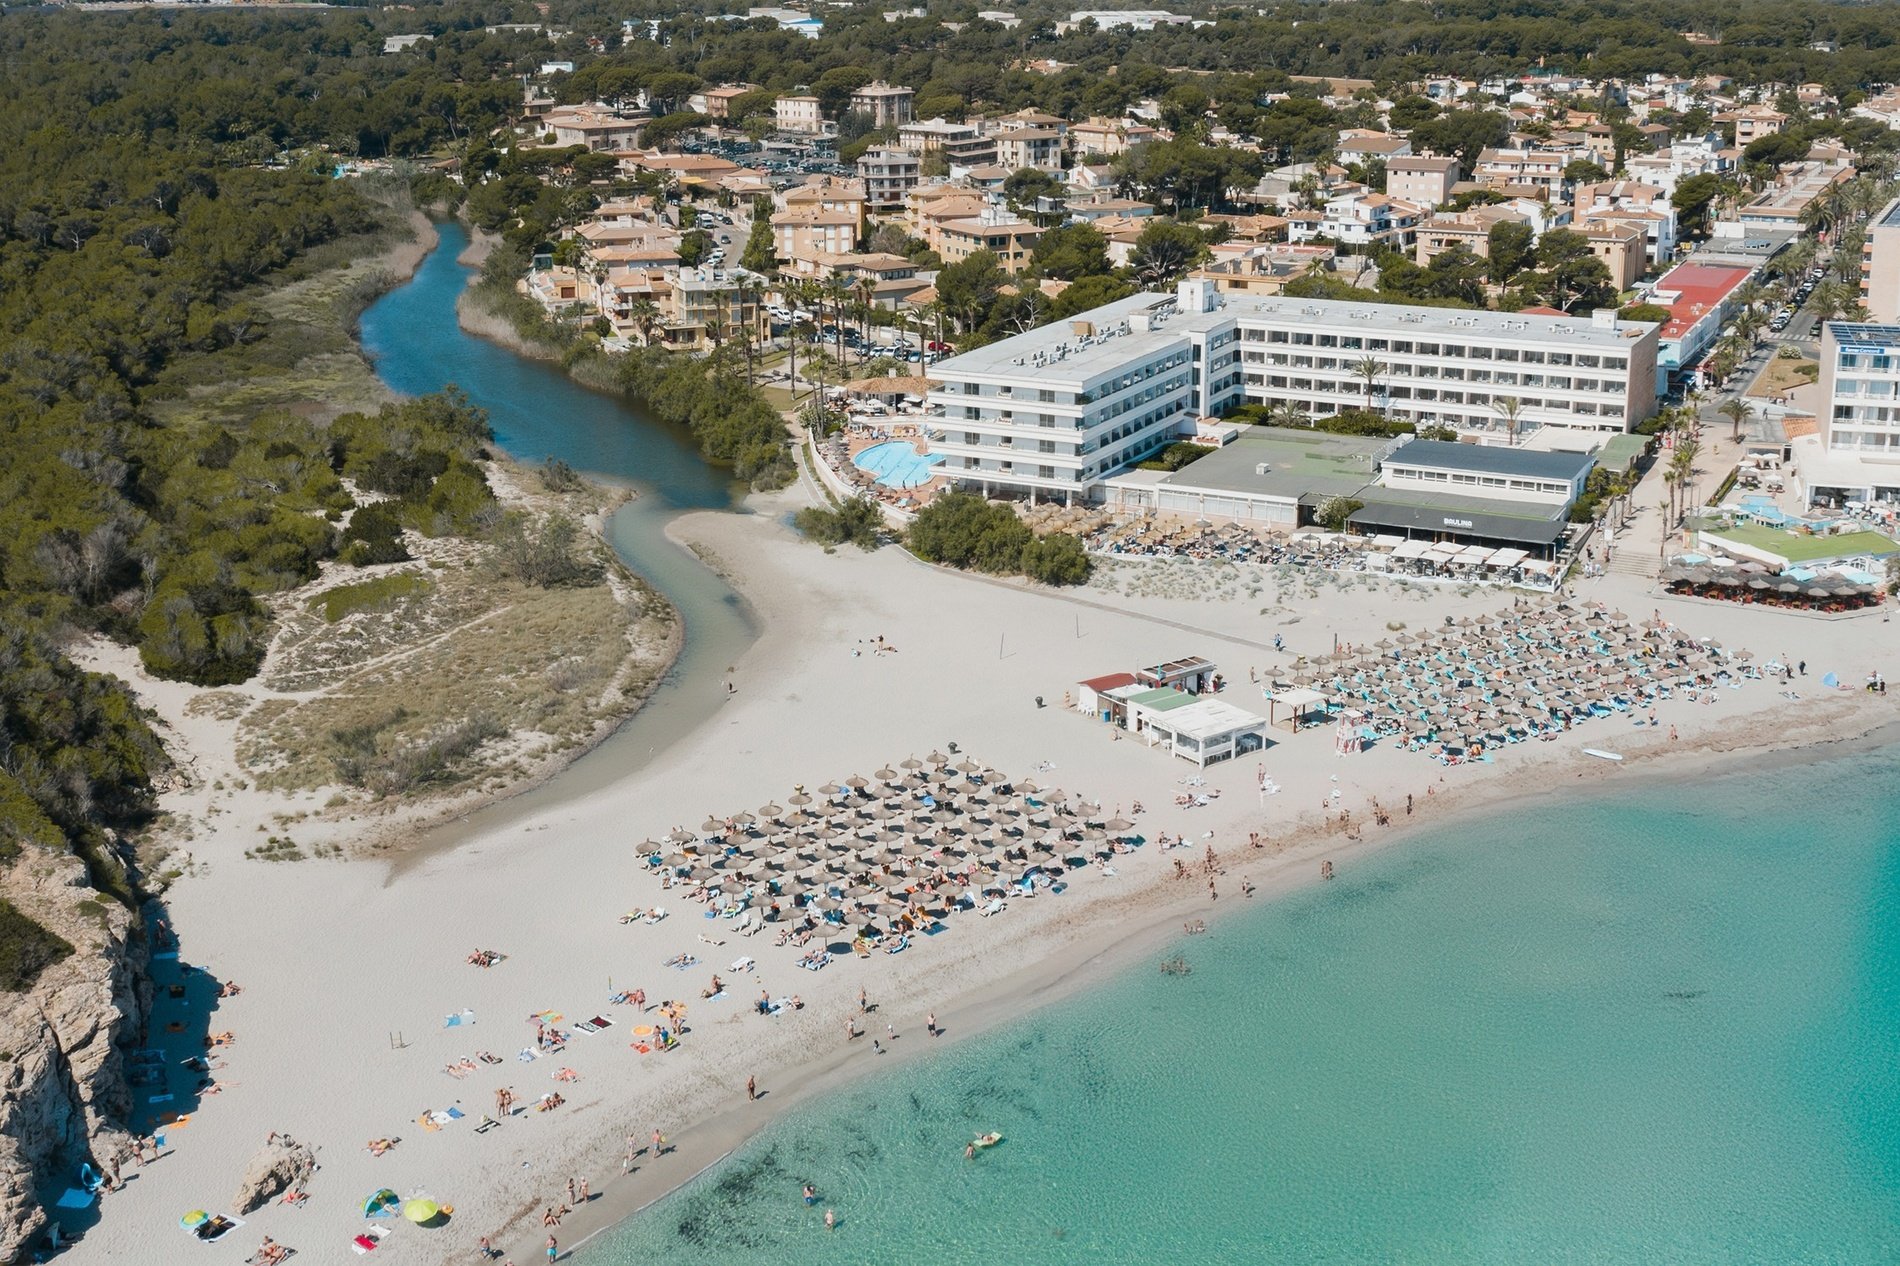 foto aerea del hotel con el mar y el torrente de son baulo